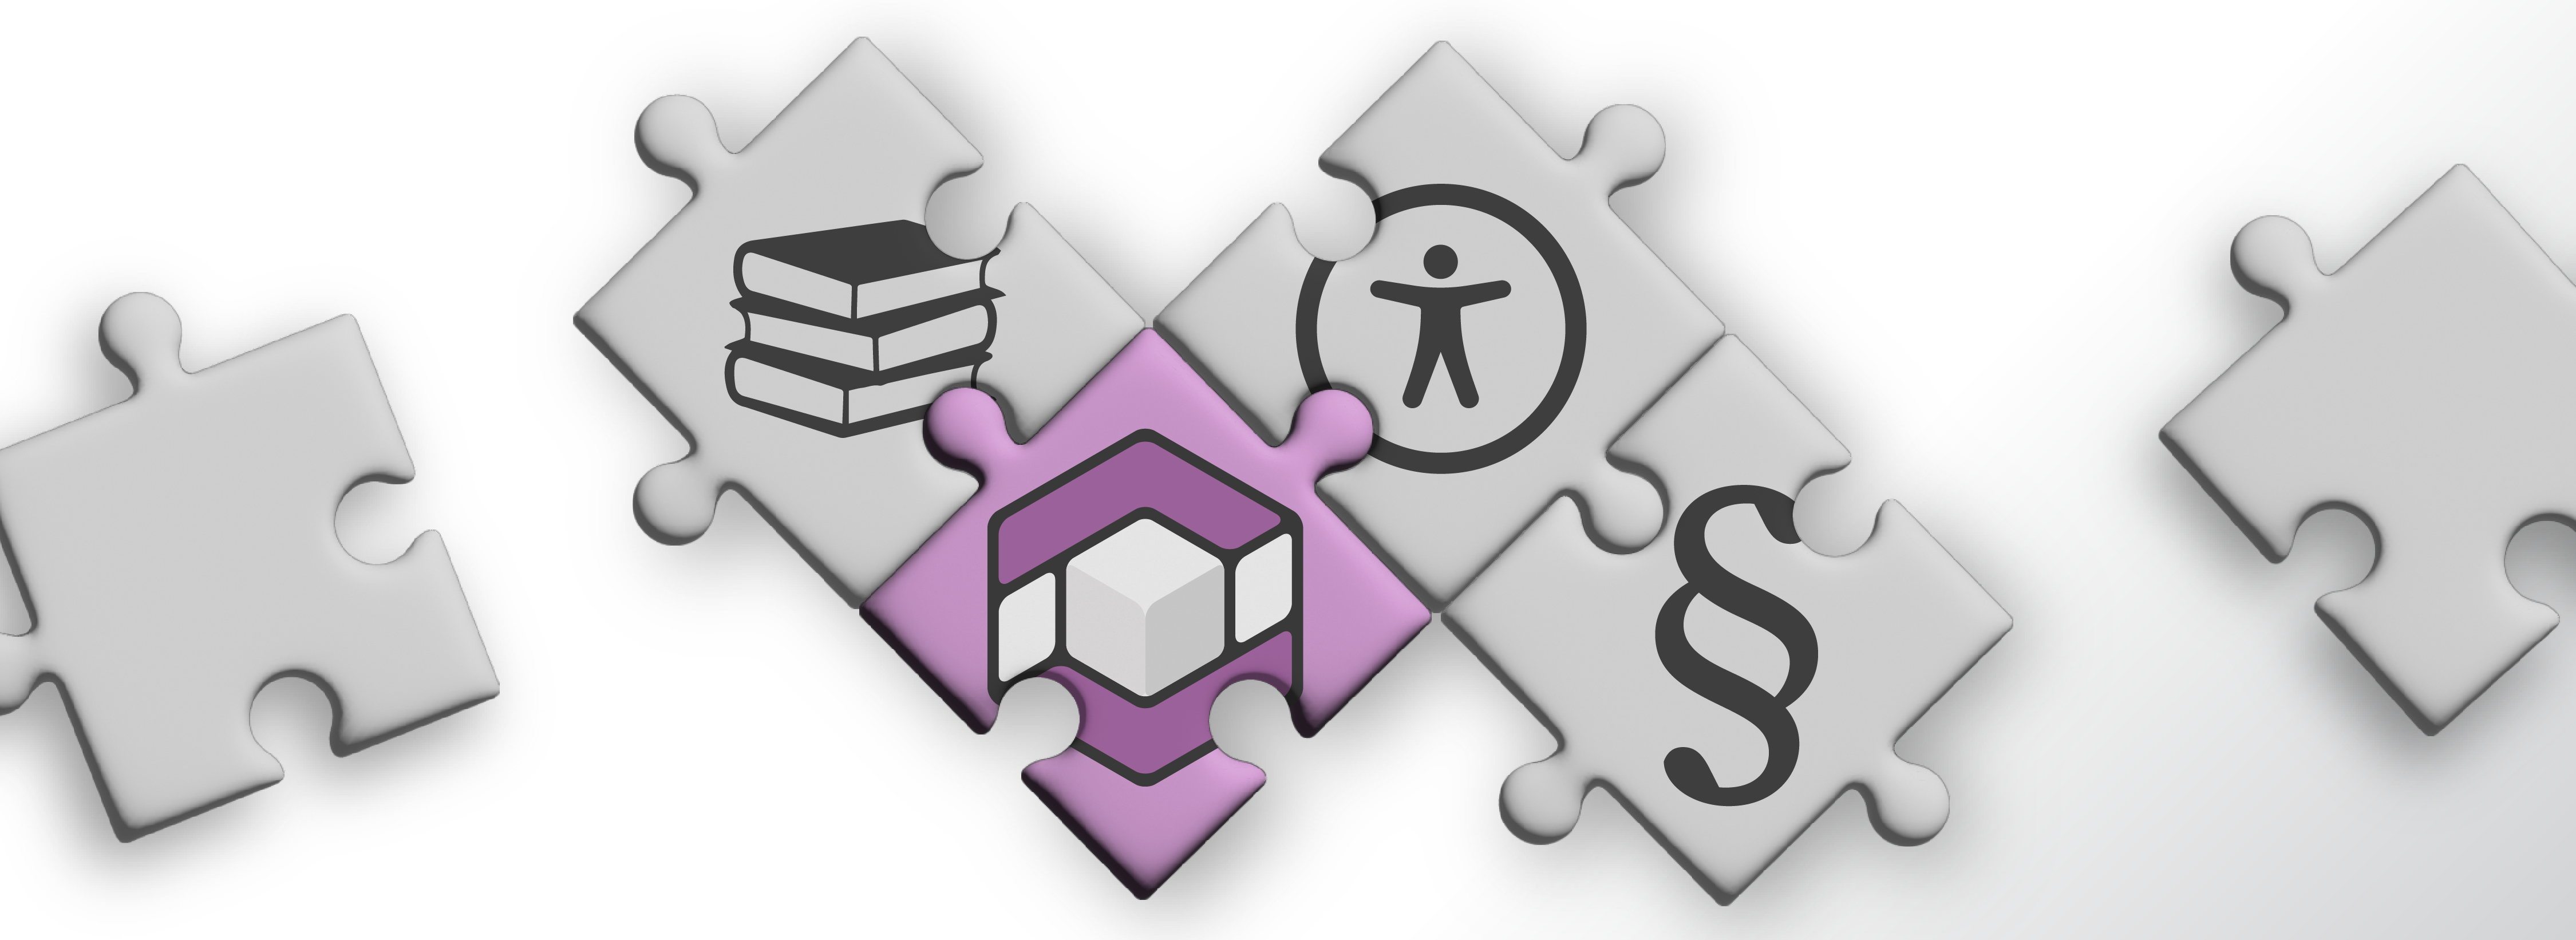 Mehrere Puzzleteile, die teilweise ineianderstecken. Die meisten Puzzleteile sind grau und mit Symbolen bedruckt: Bücher, Paragraf, digitale Barrierefreiheit. Ein Puzzleteil ist lila und mit dem axesService-Logo bedruckt.  